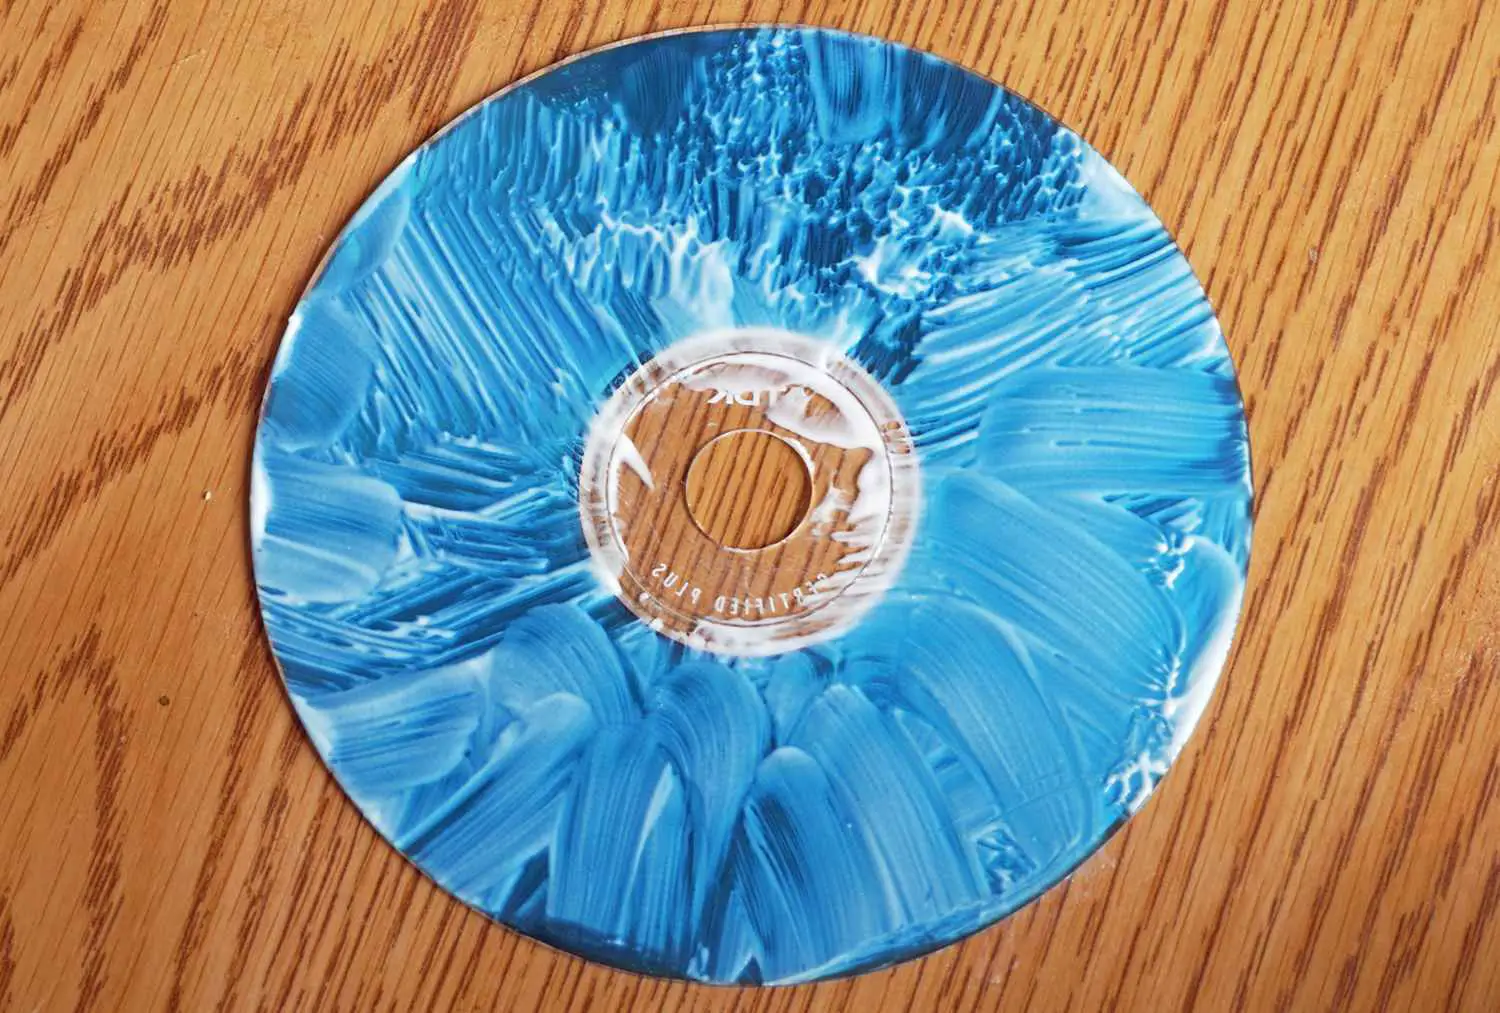 CD arranhado coberto em polonês